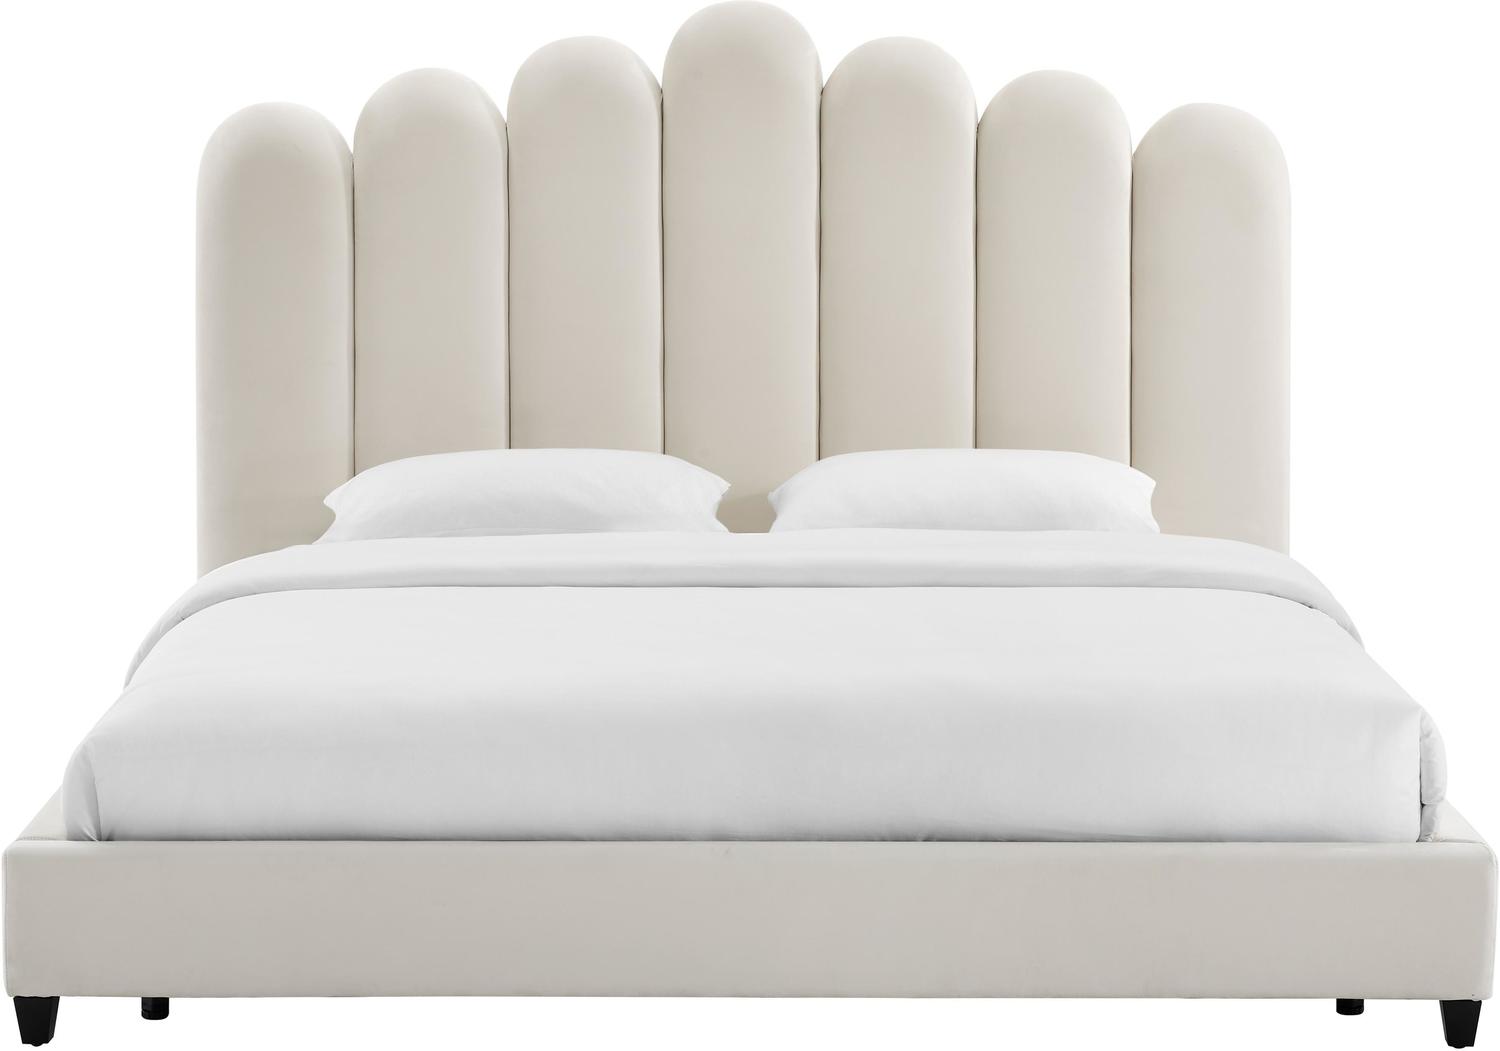 grey bed base Tov Furniture Beds Cream